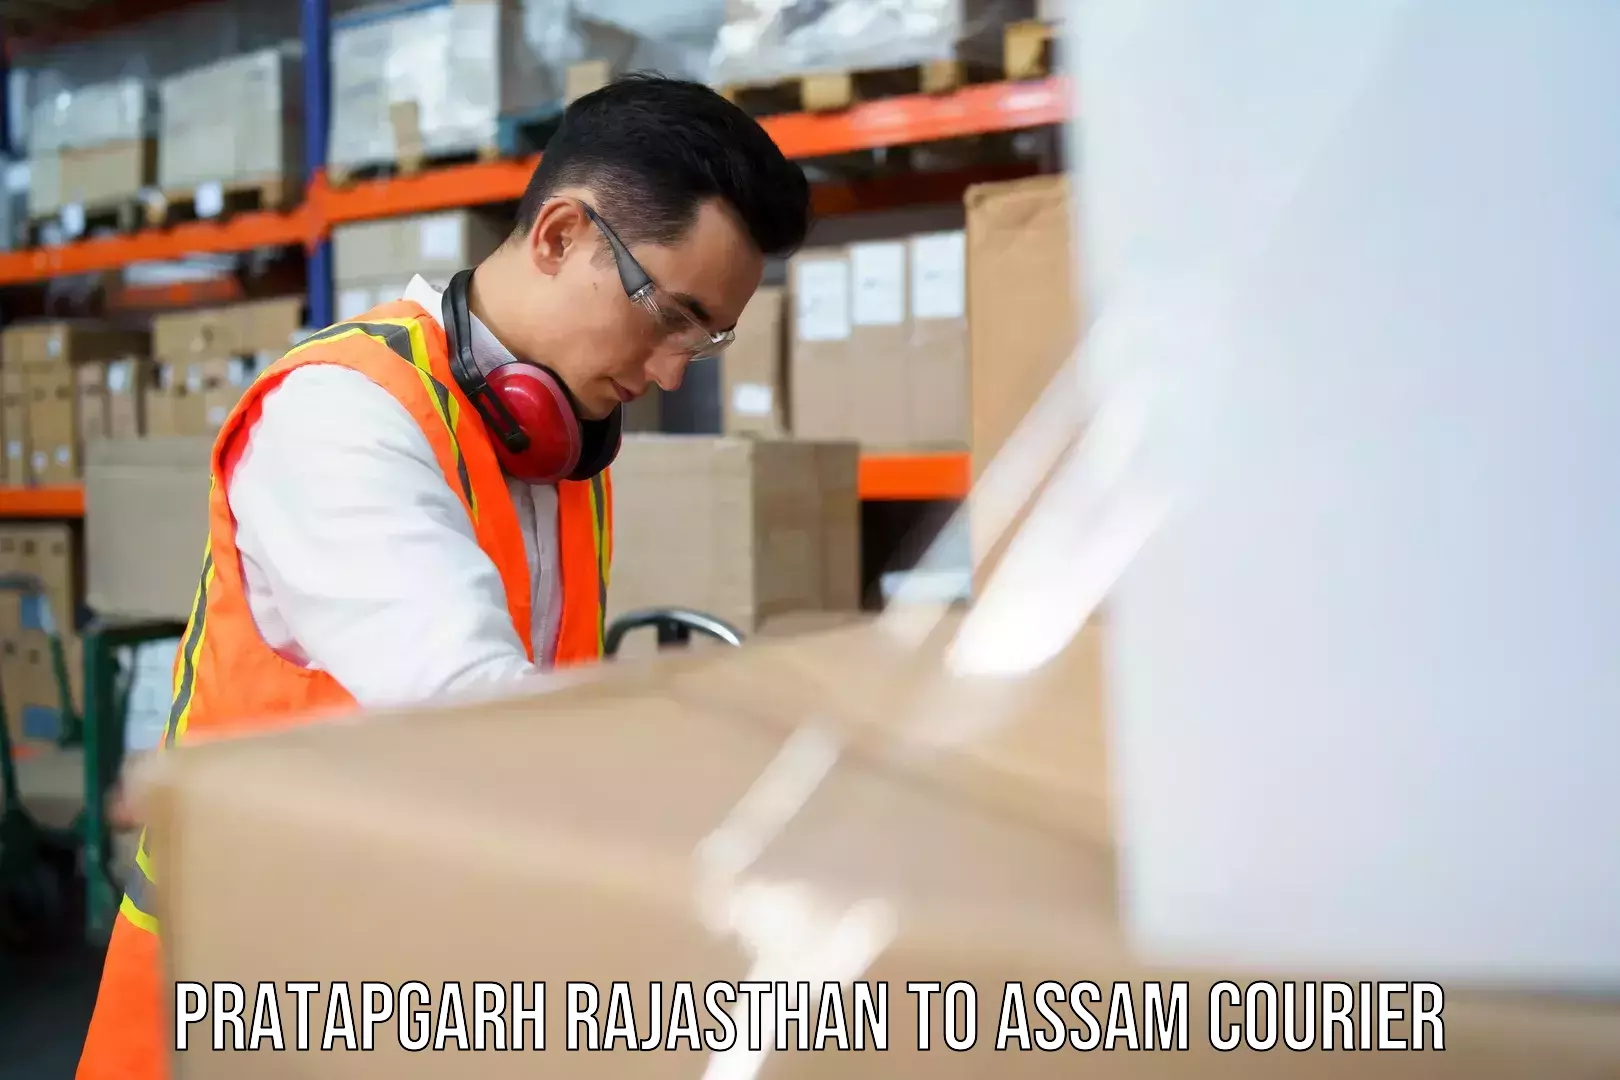 Efficient freight service Pratapgarh Rajasthan to Assam